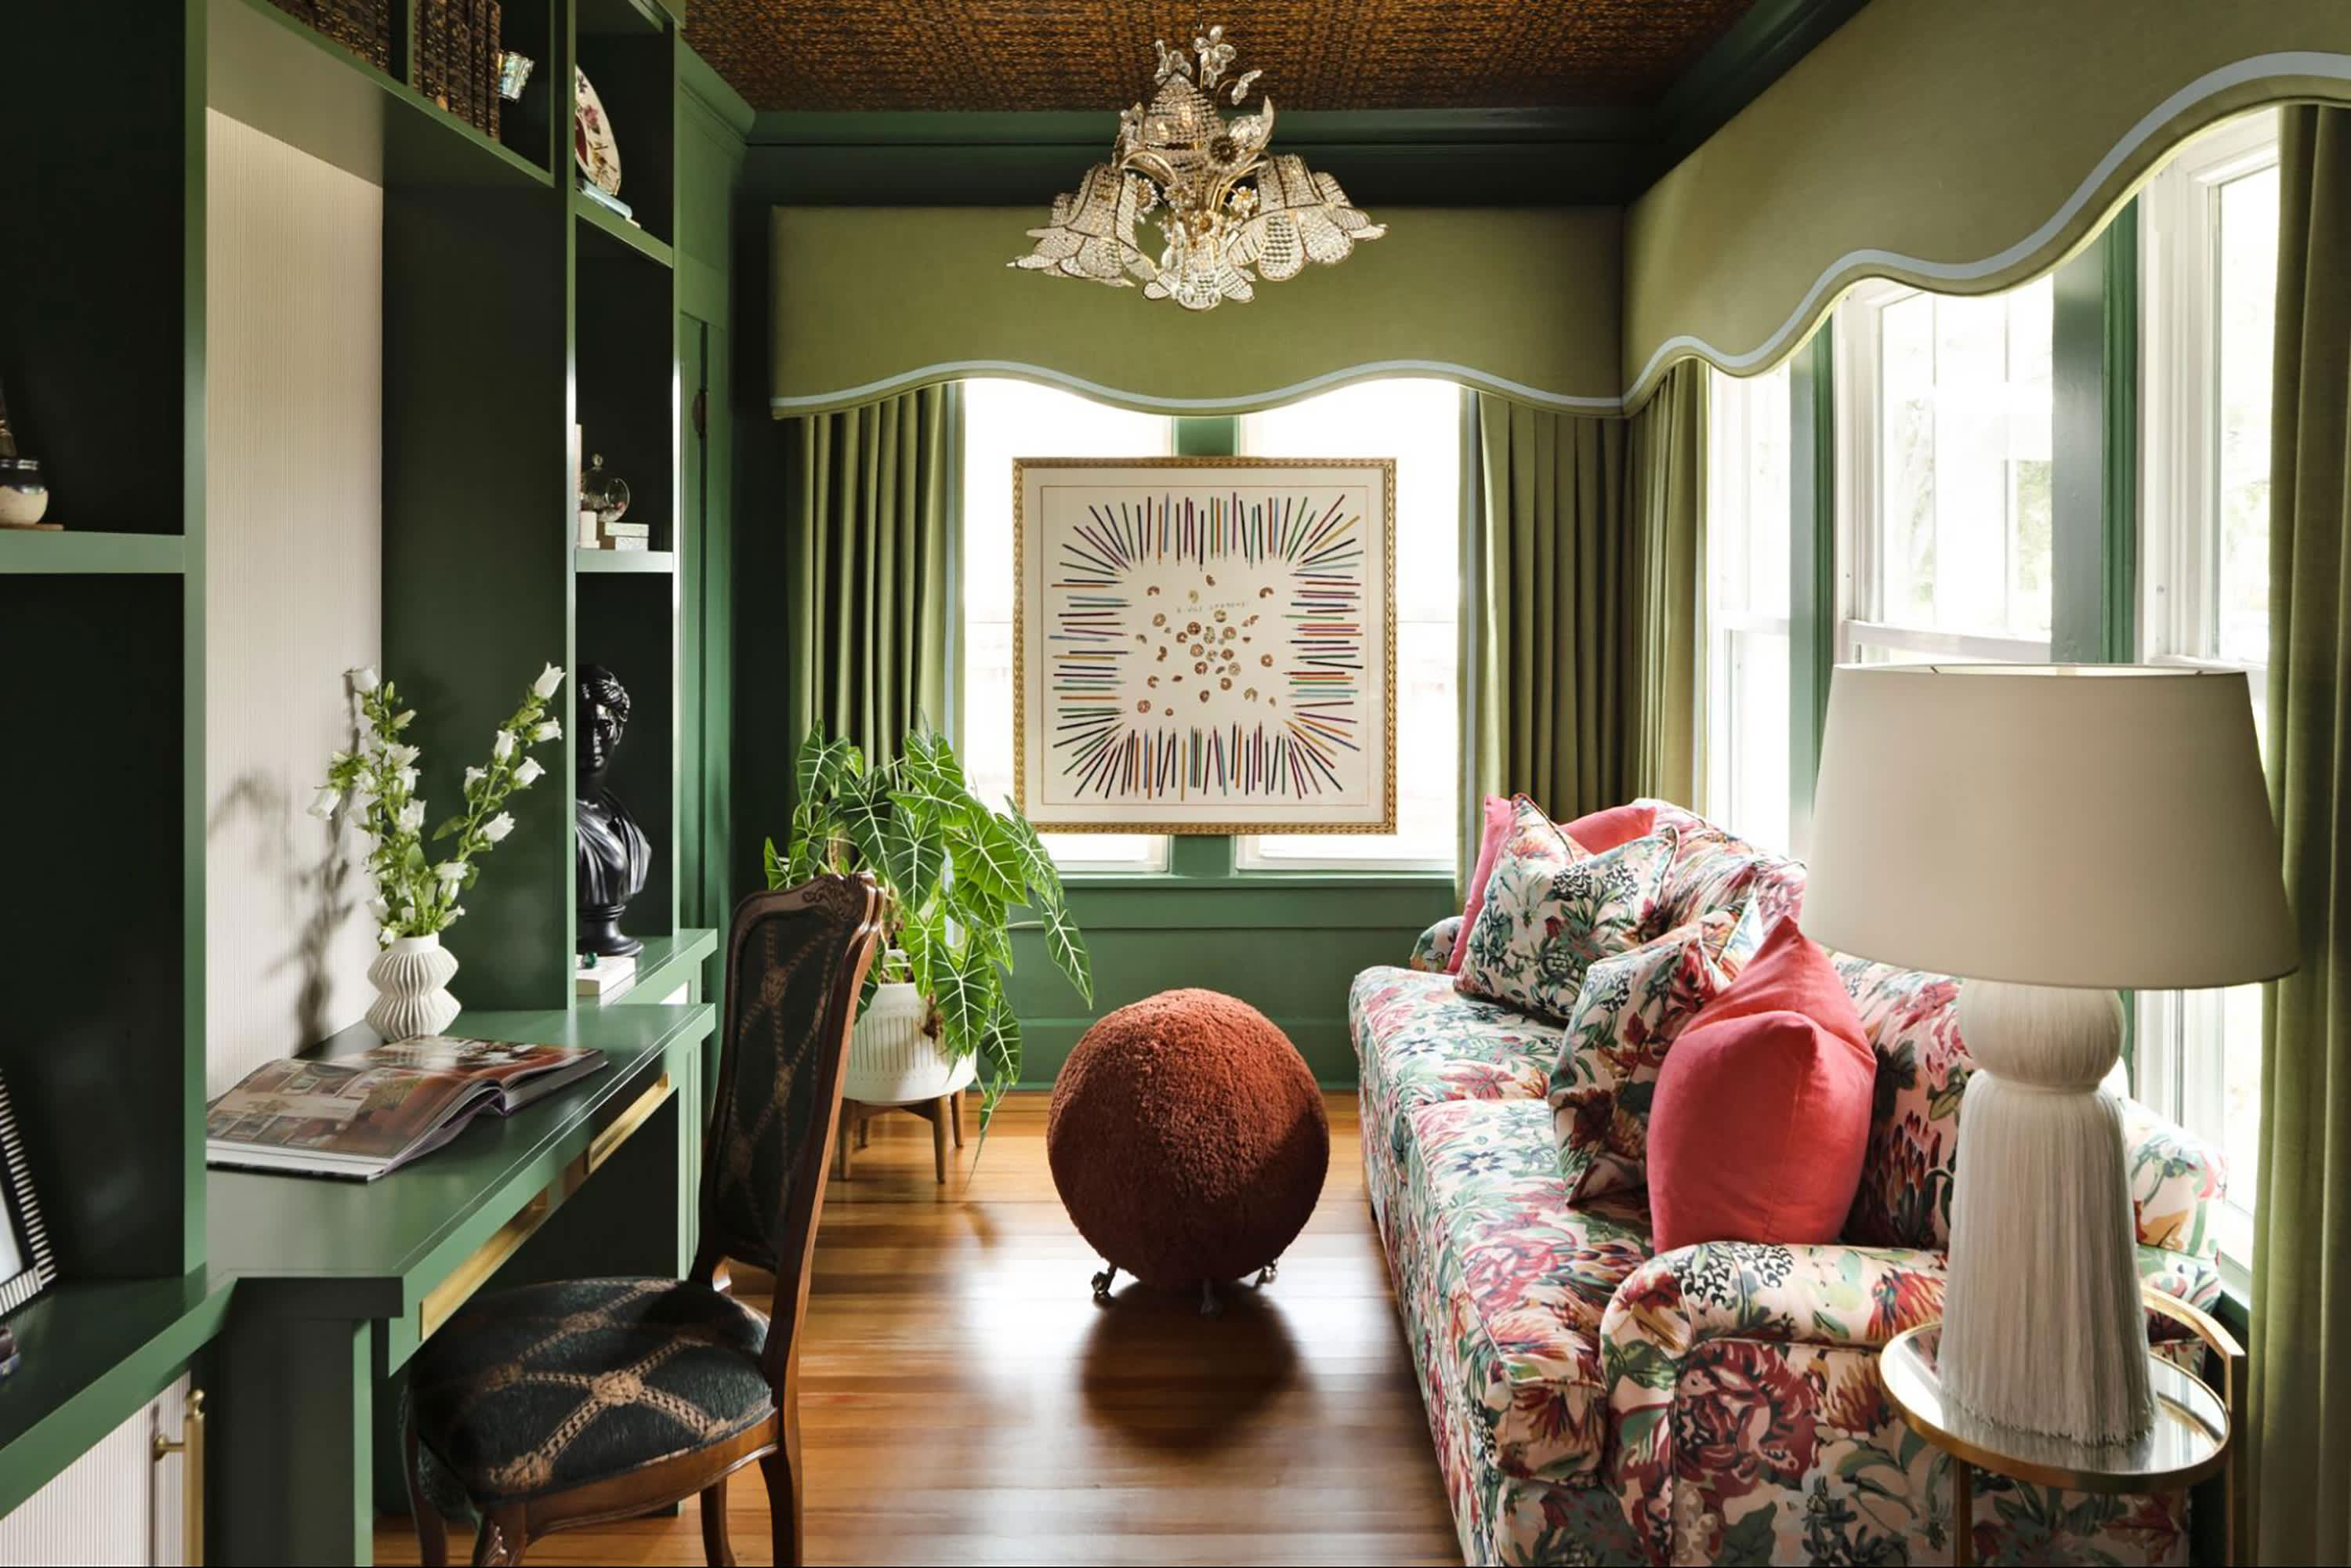 Cobalt Blue and Jade Green Color Scheme for Living Room